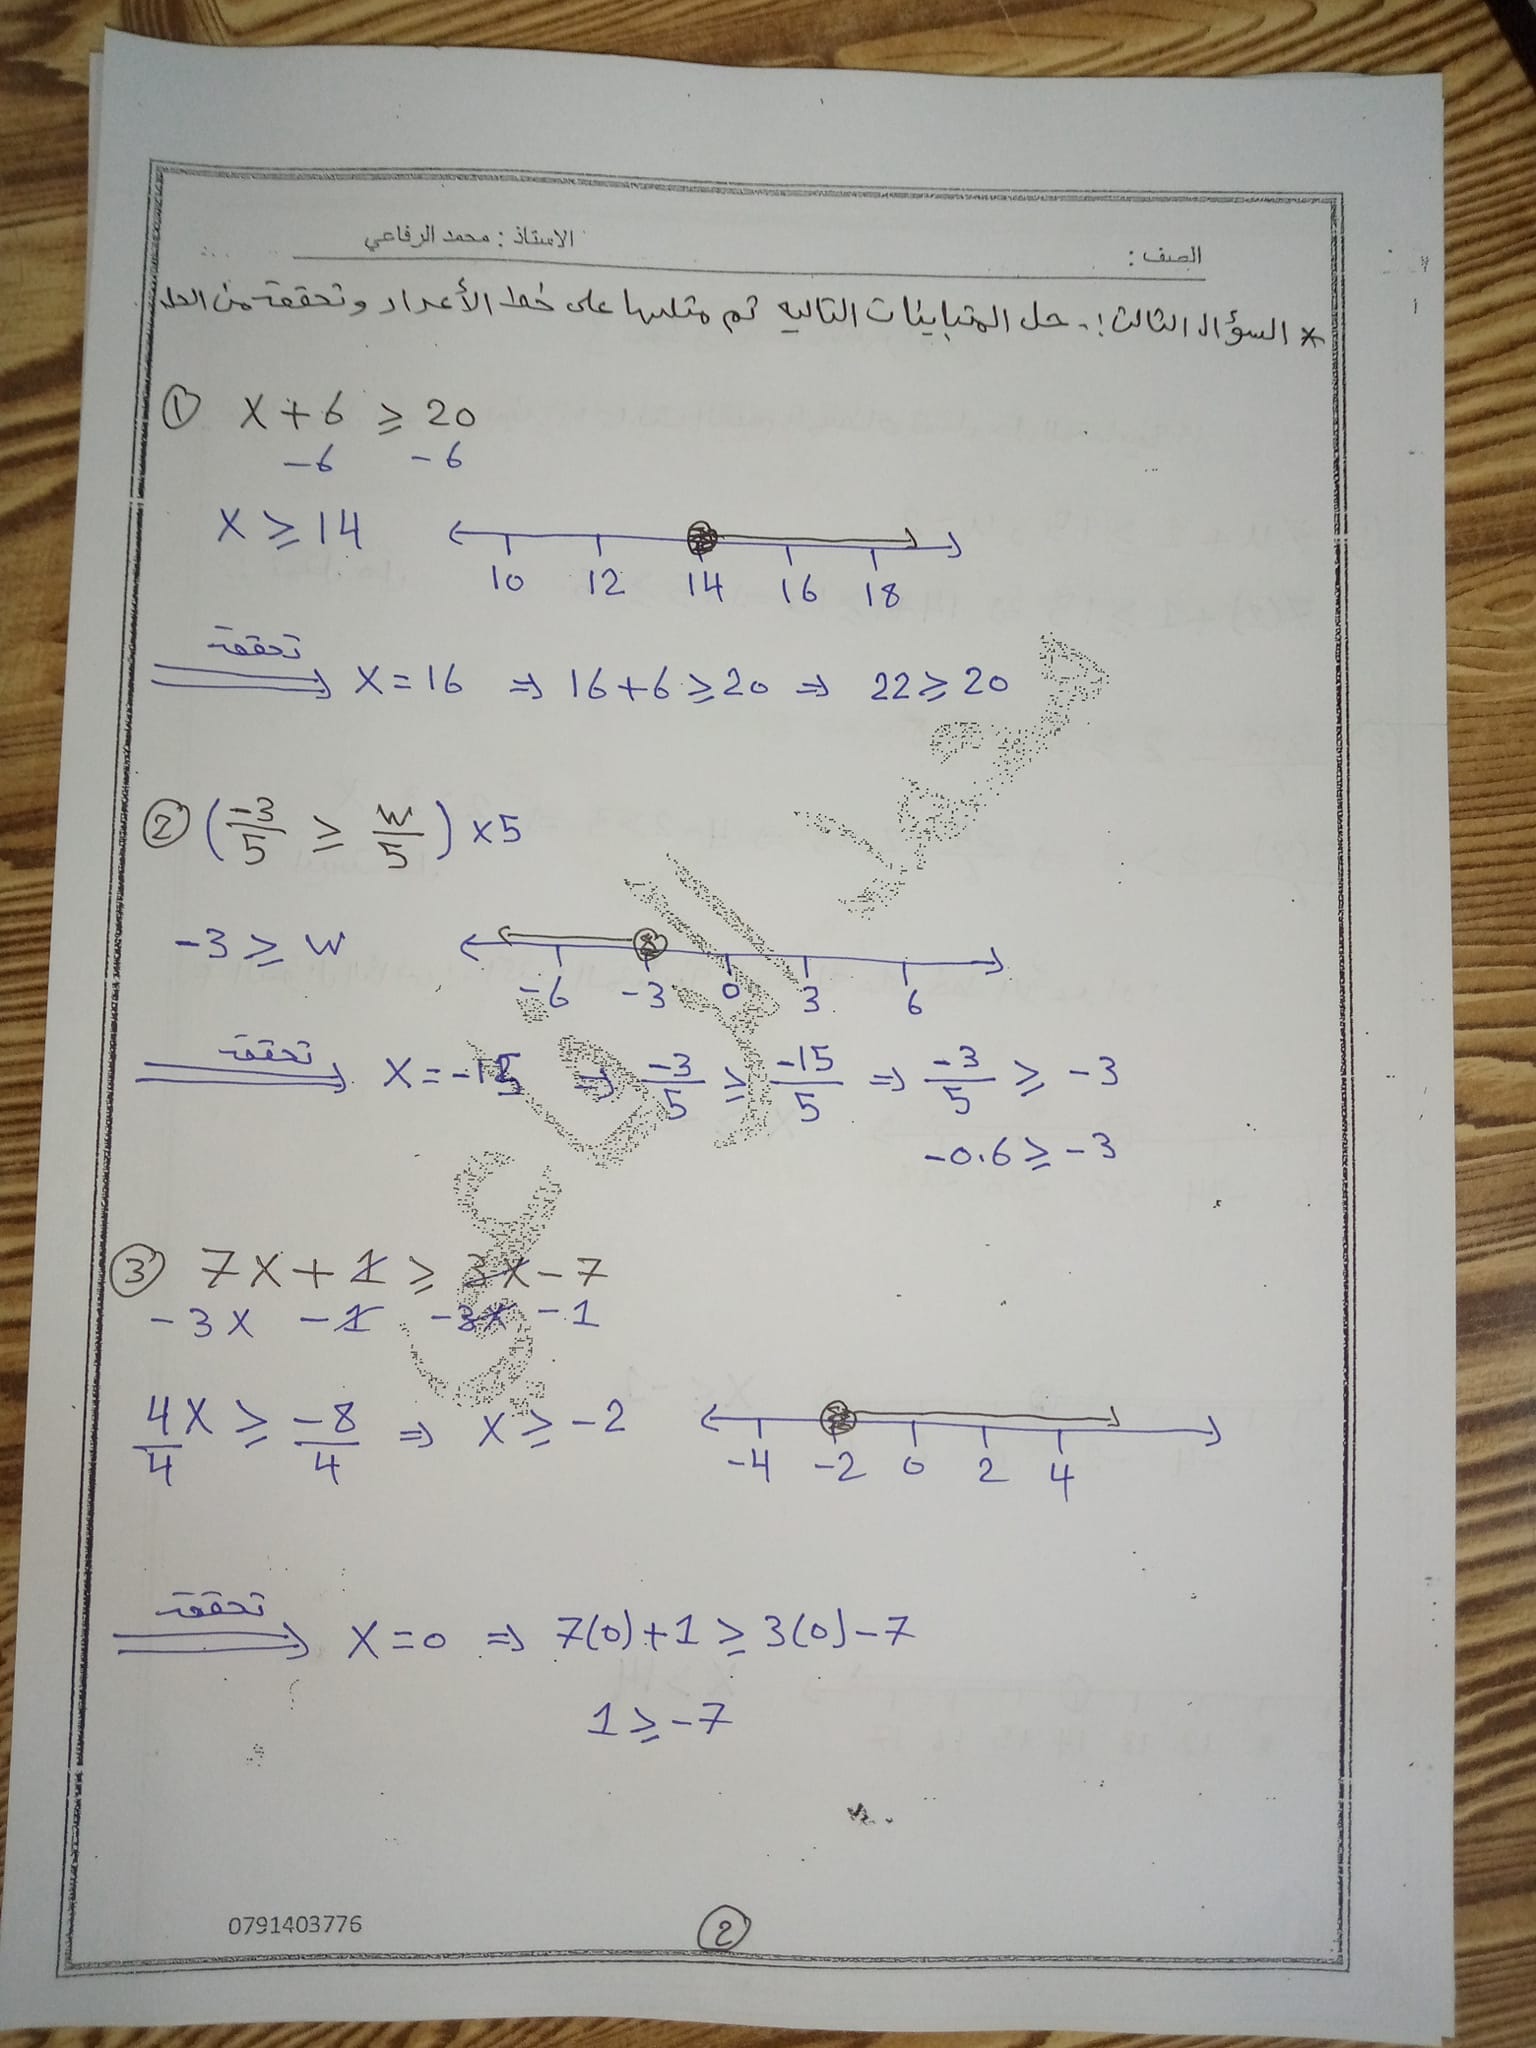 2 صور امتحان رياضيات الشهر الاول للصف الثامن الفصل الثاني 2022 مع الحل.jpg